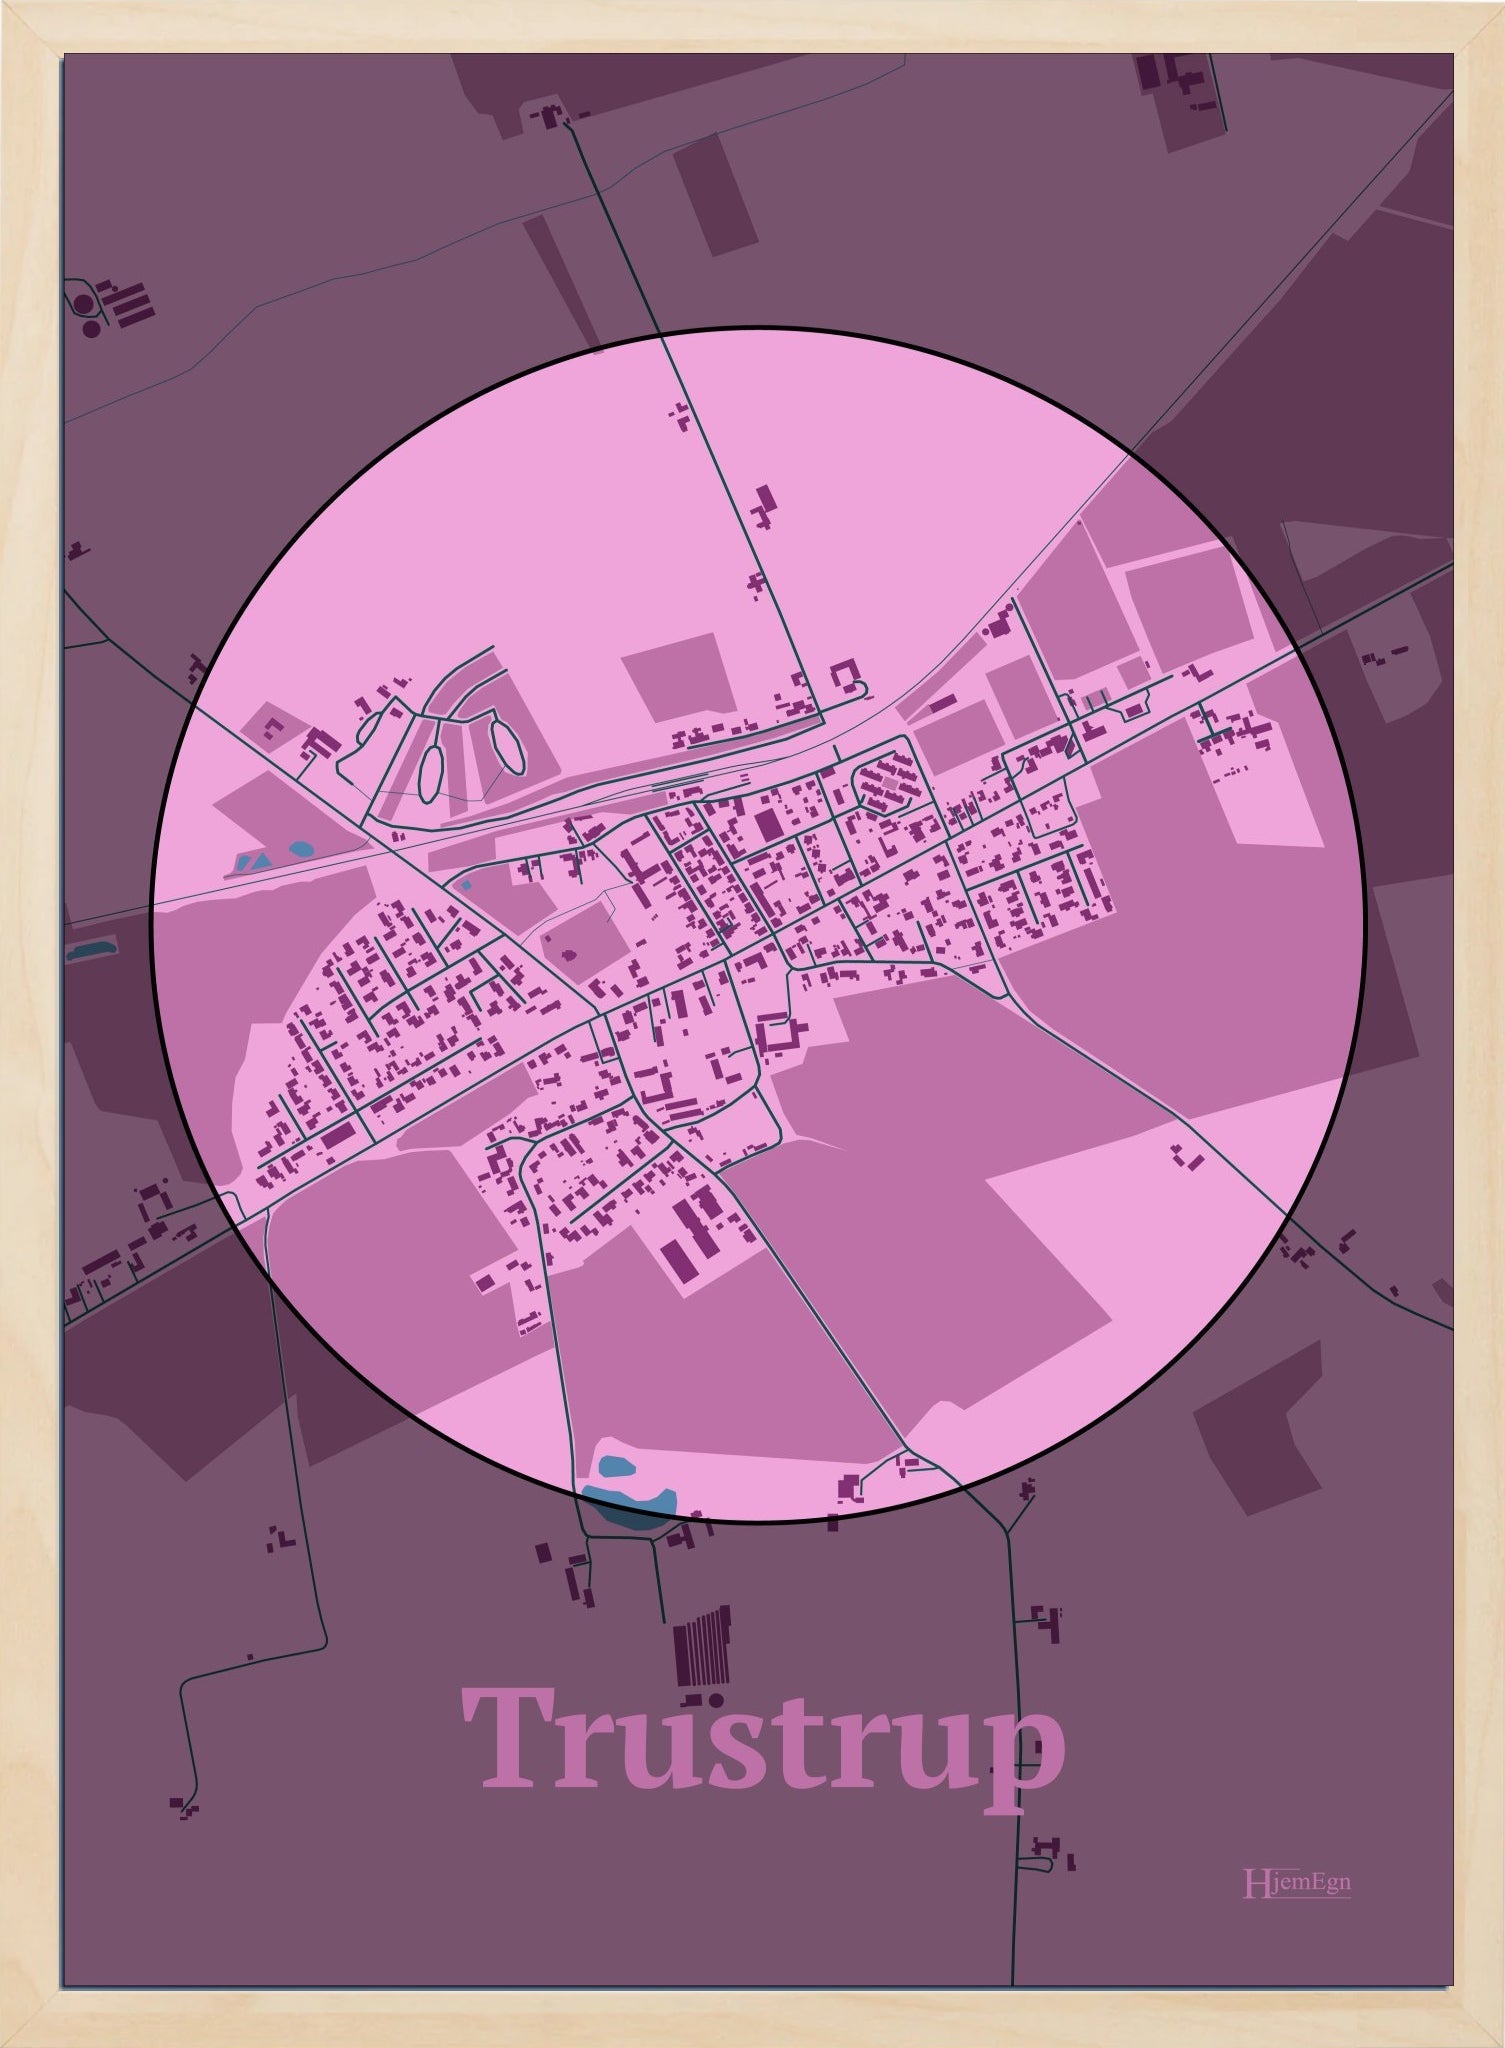 Trustrup plakat i farve pastel rød og HjemEgn.dk design centrum. Design bykort for Trustrup